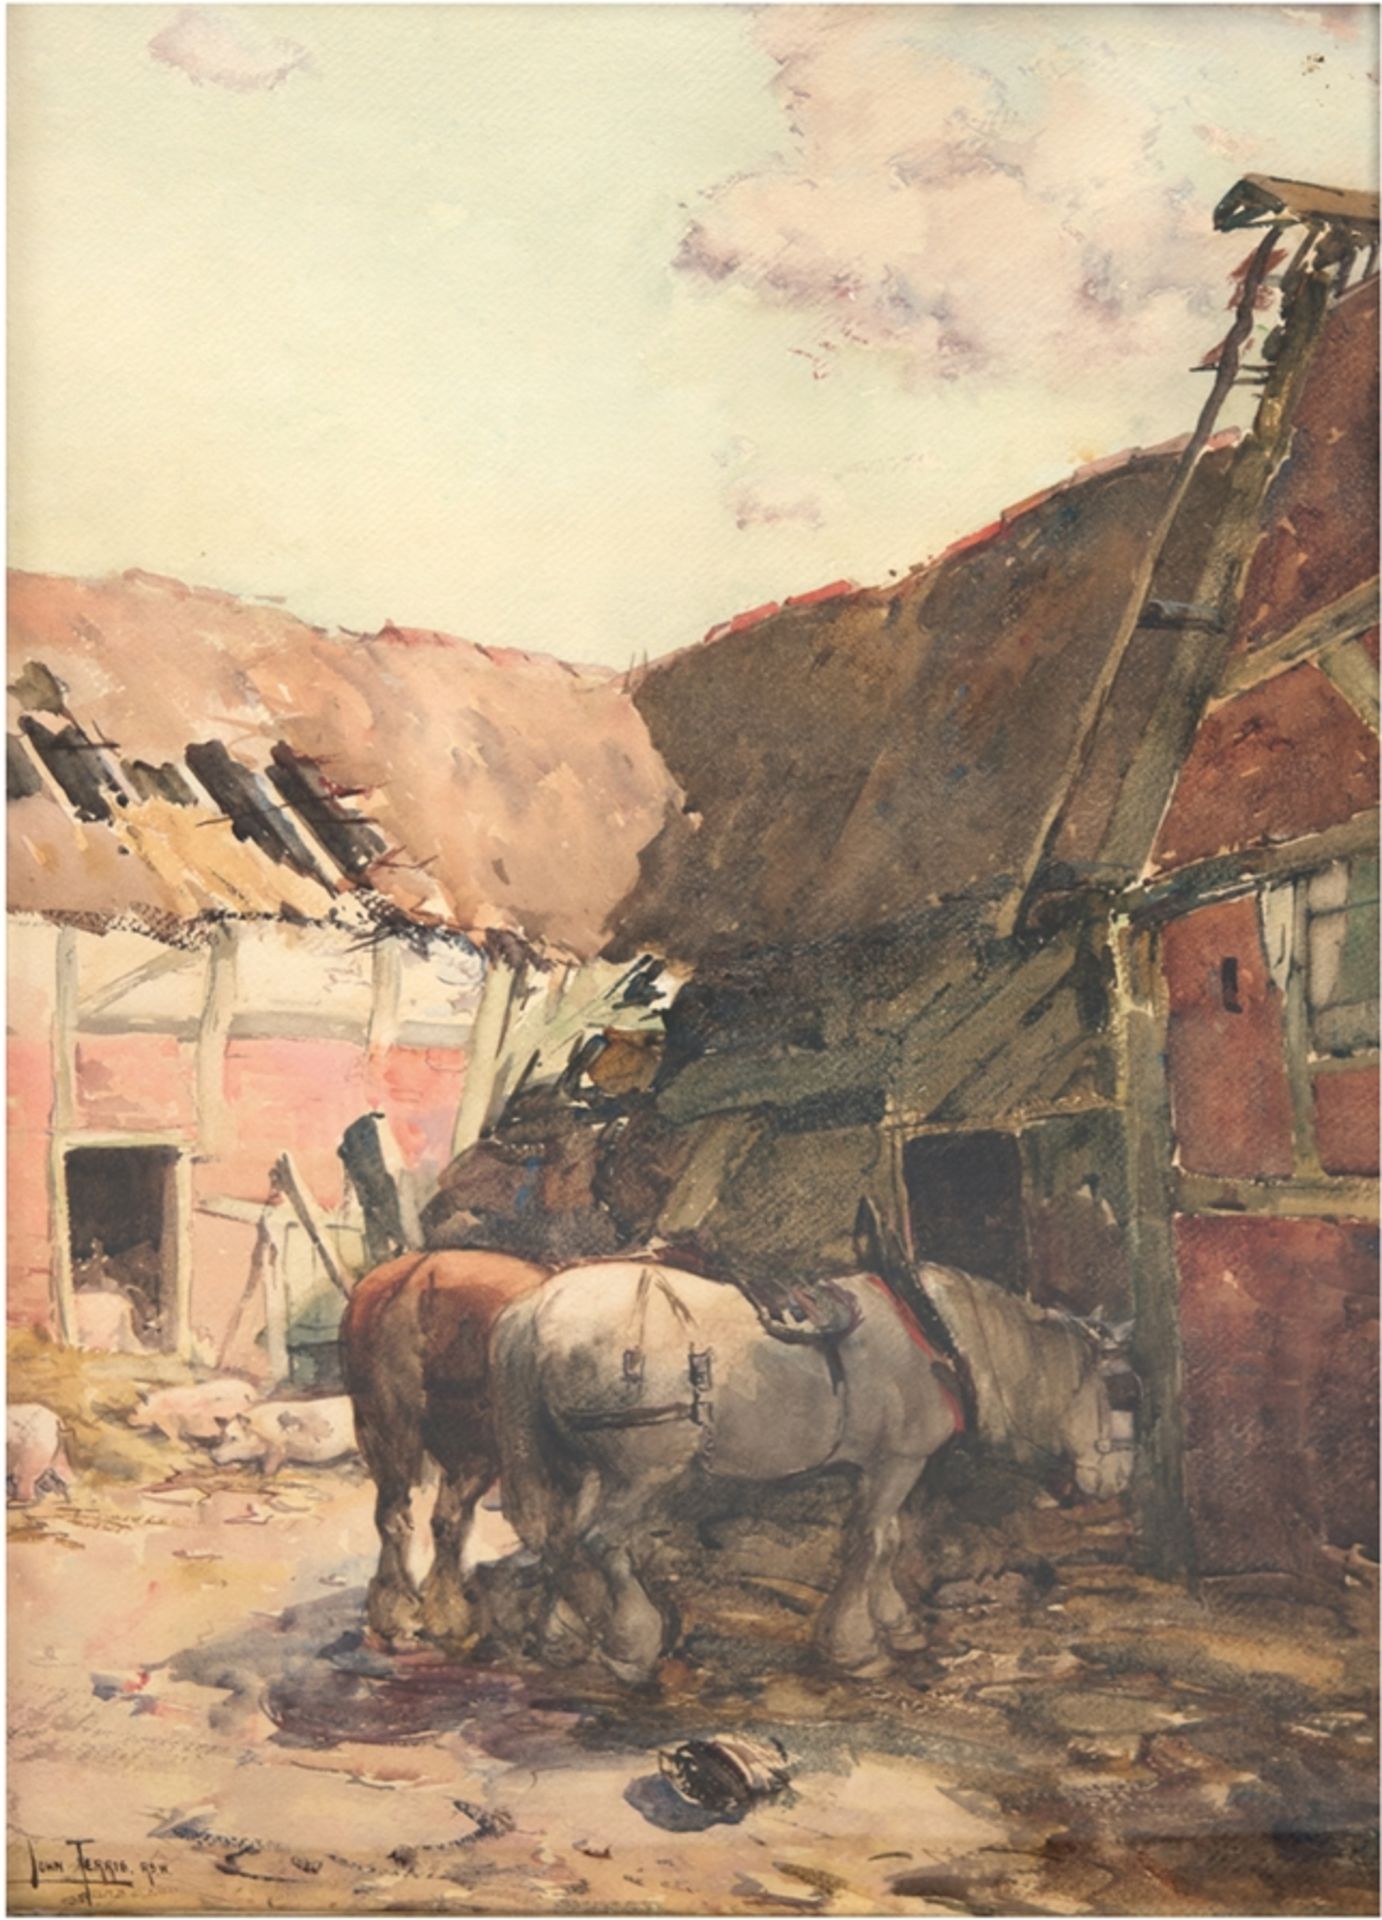 Terris, John (1865-1914) "Innenhof eines Bauerngehöfts mit Pferden und Schweinen", Aquarell, sign. 